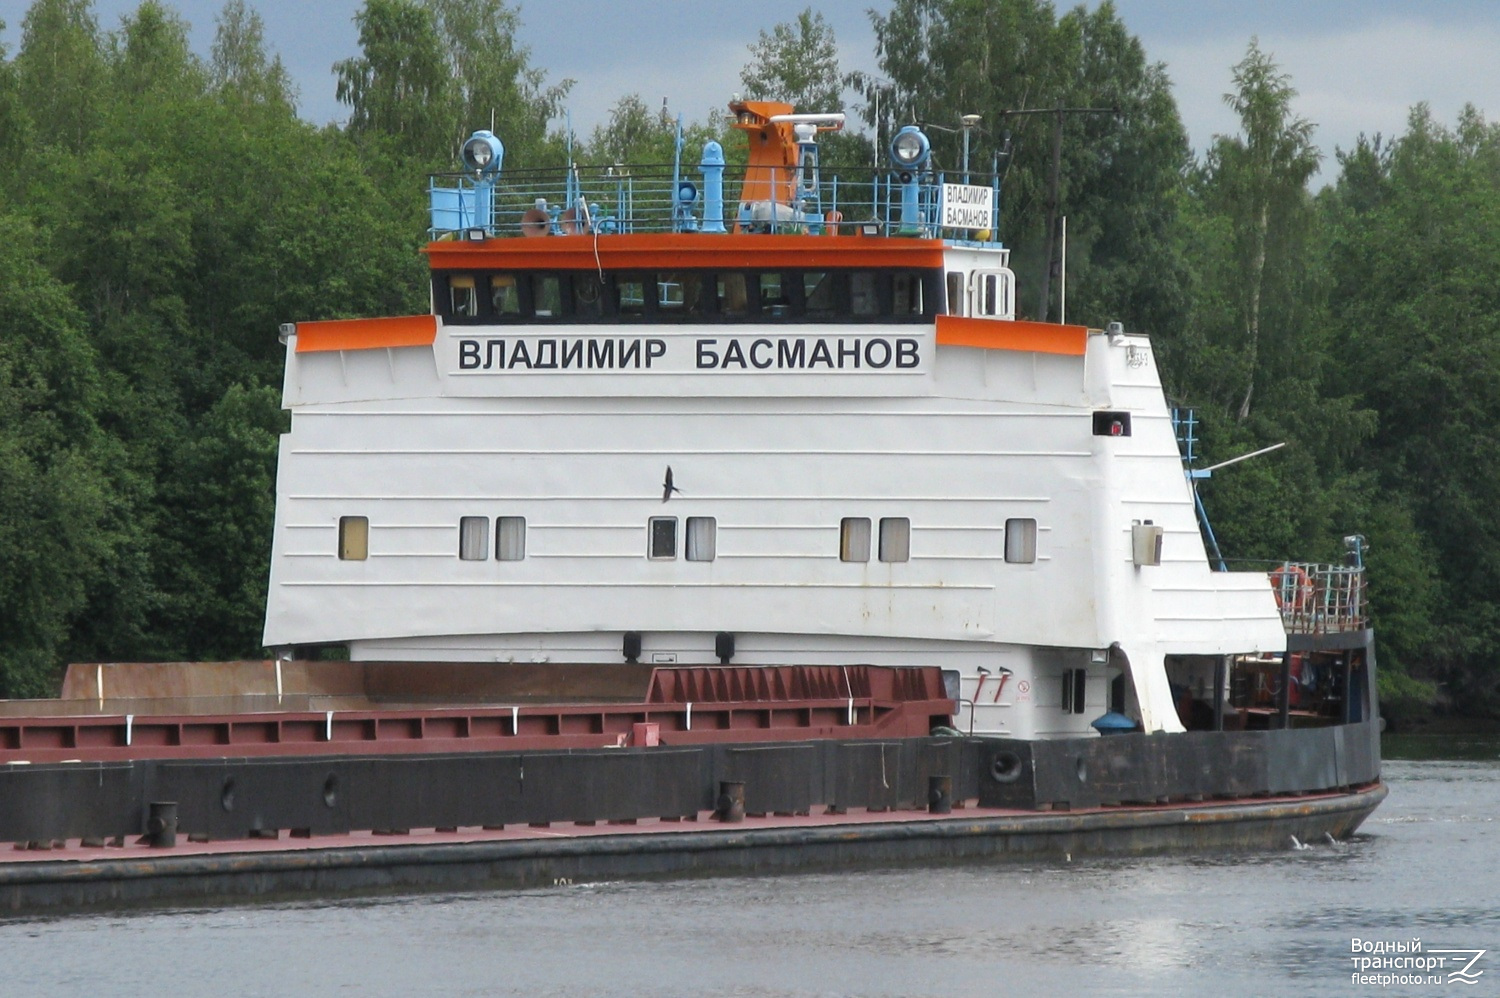 Владимир Басманов. Vessel superstructures